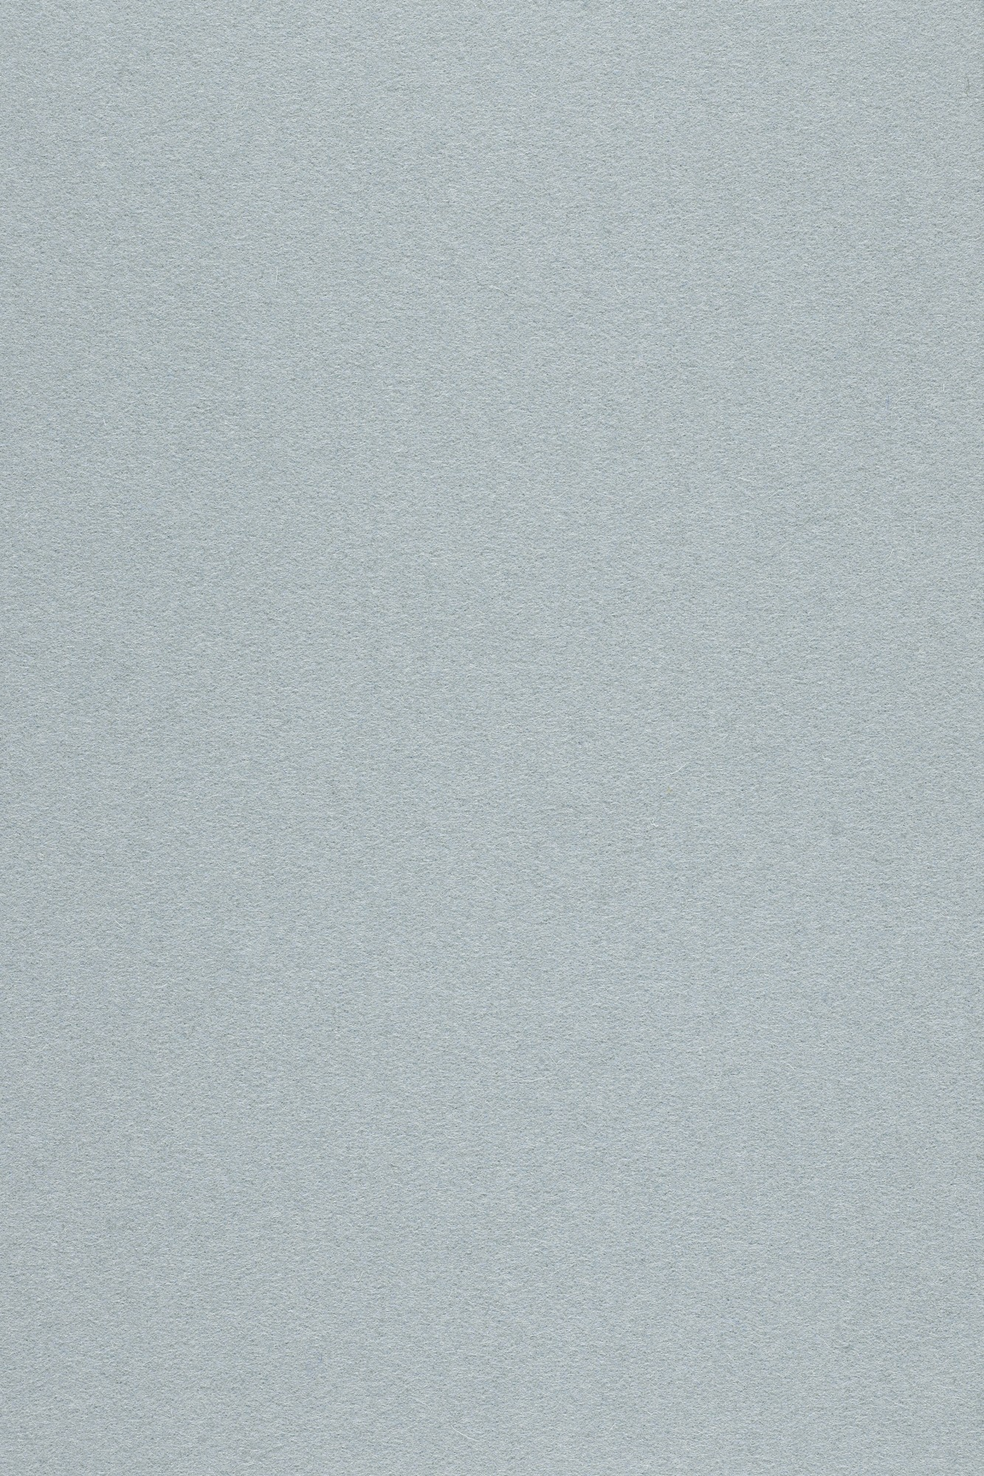 Fabric sample Divina 3 171 grey